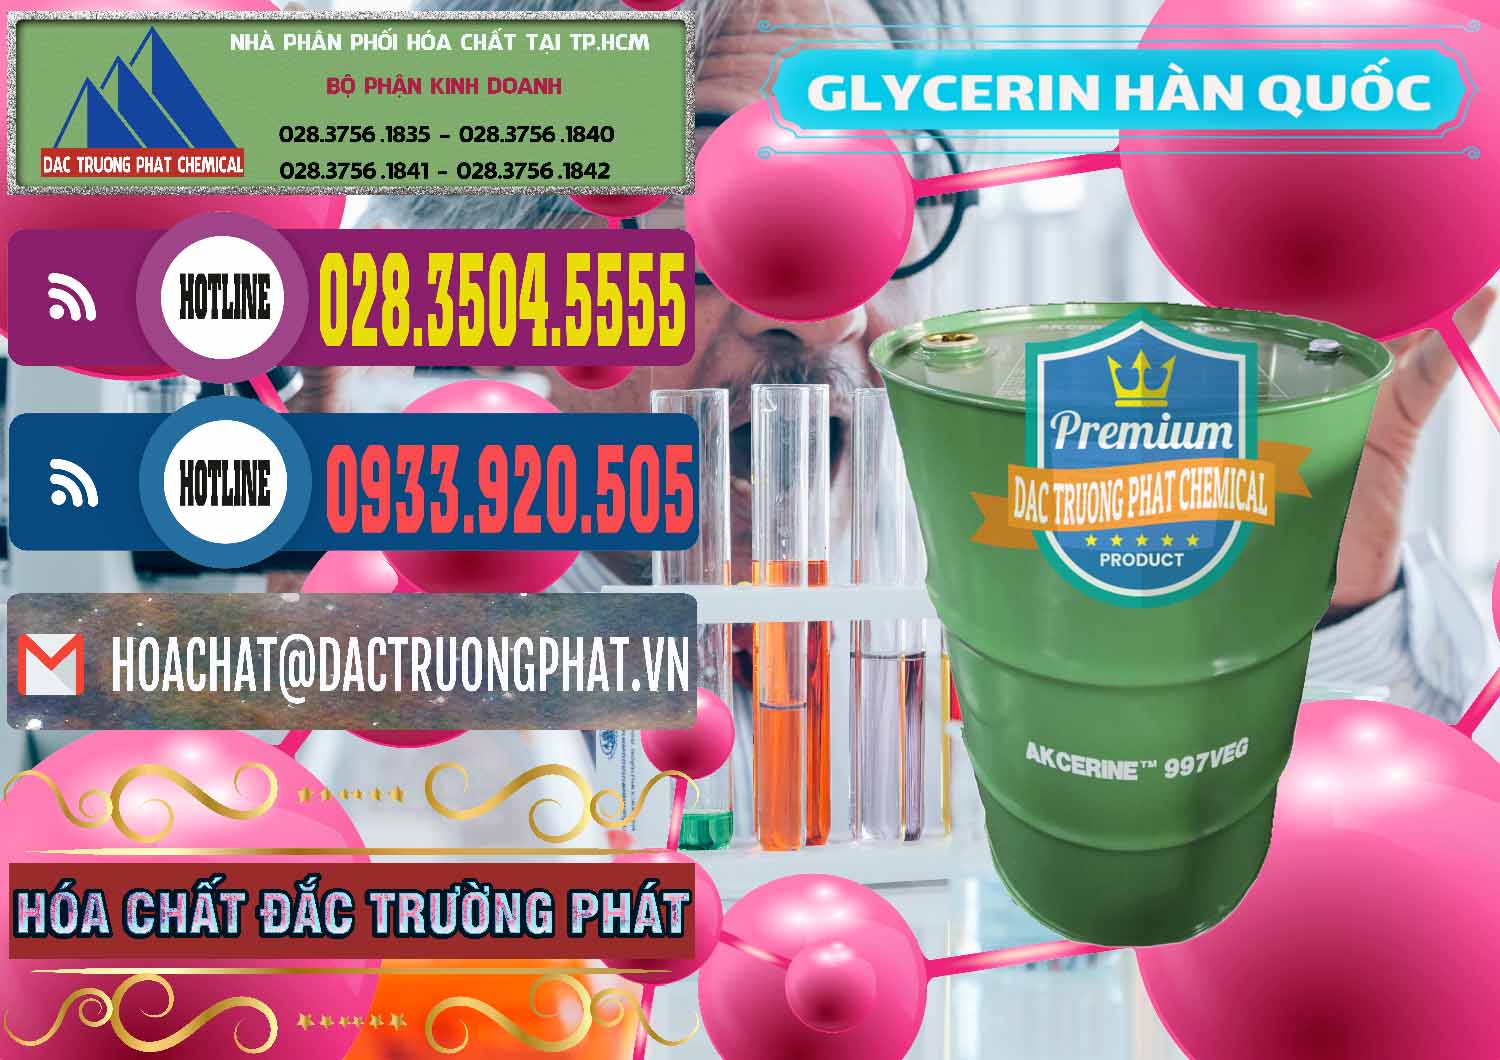 Nơi chuyên bán và cung cấp Glycerin – C3H8O3 Hàn Quốc Korea - 0403 - Đơn vị chuyên nhập khẩu - cung cấp hóa chất tại TP.HCM - muabanhoachat.com.vn